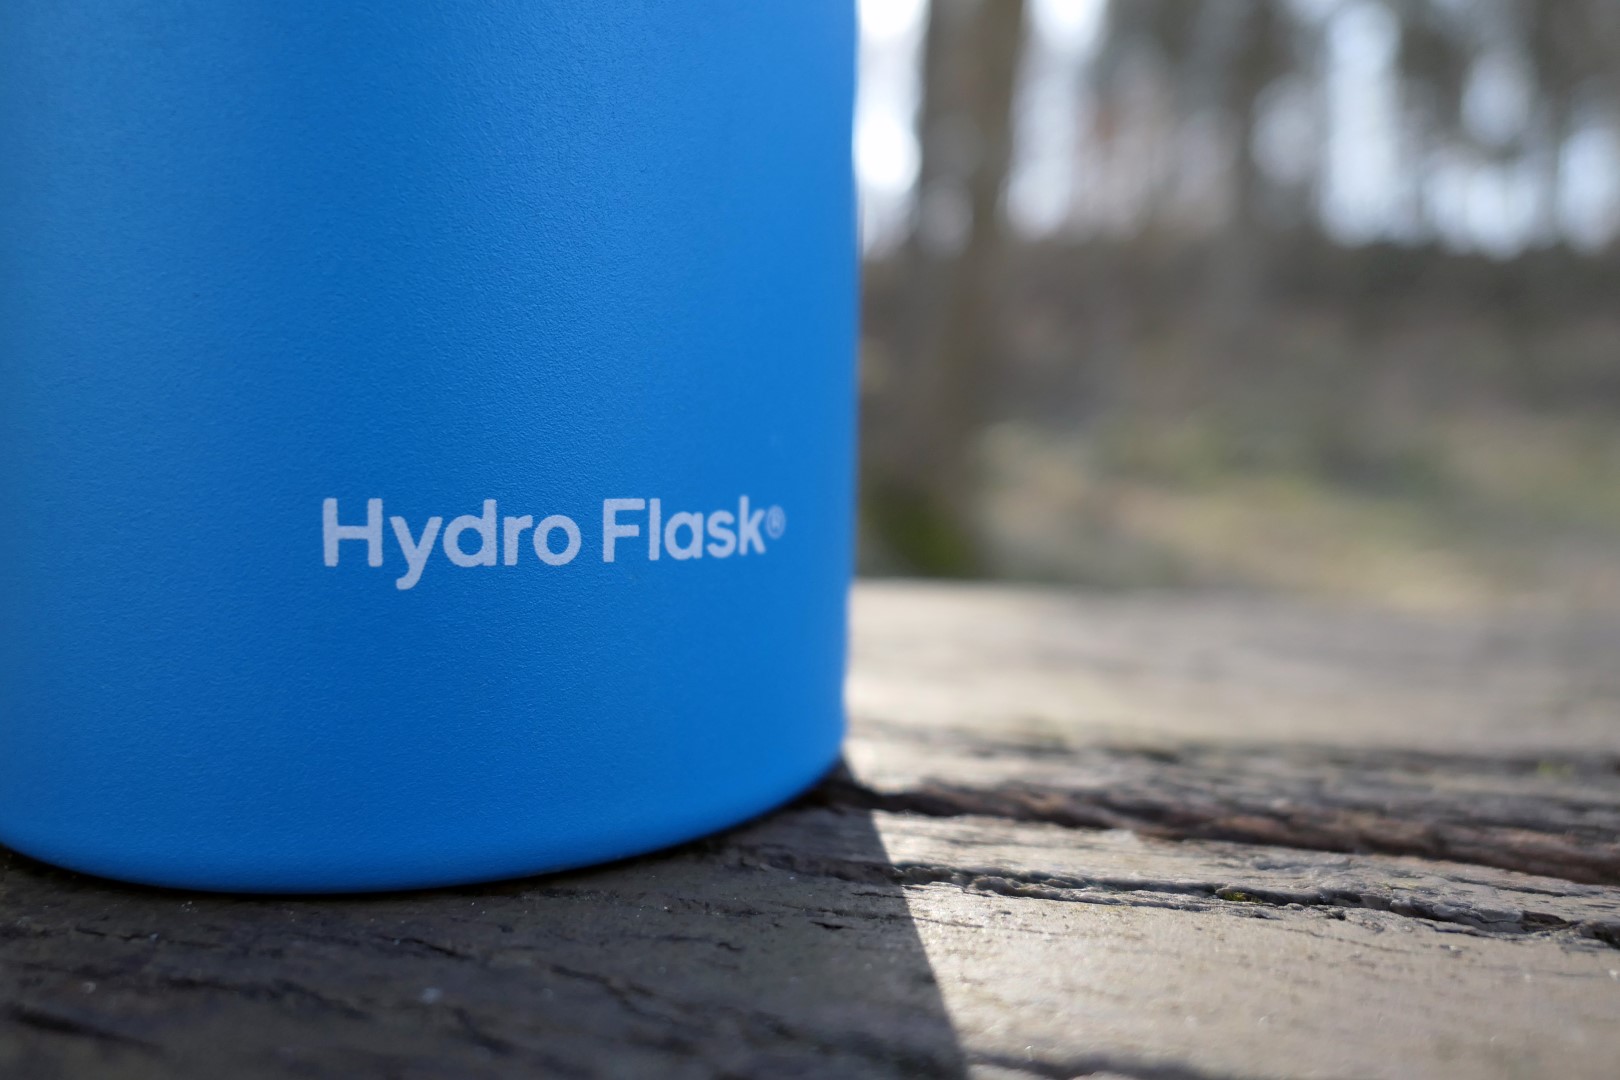 Hydro Flask –  Bunte Thermoflaschen mit hervorragender Isolierung